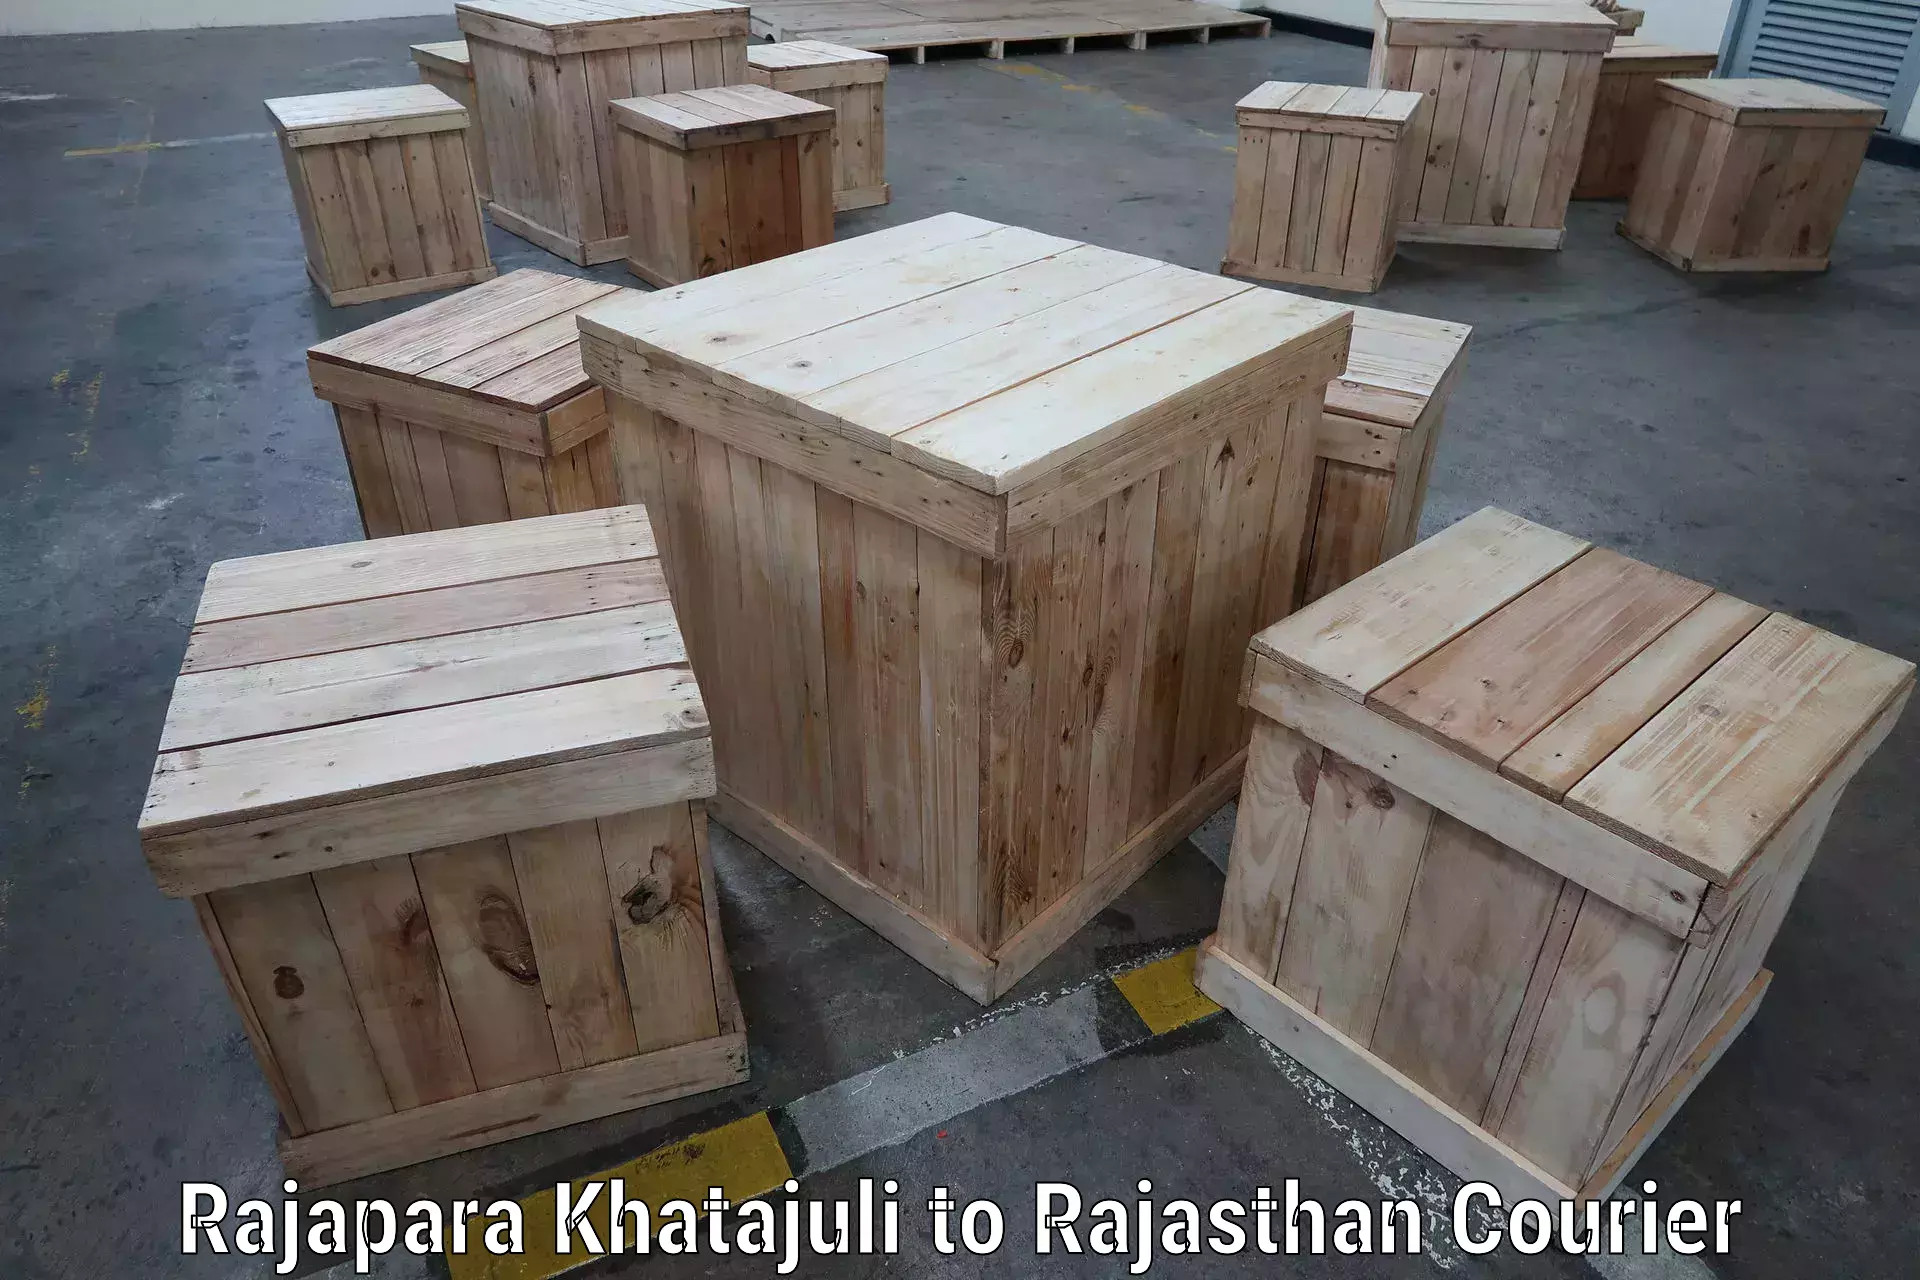 Parcel handling and care Rajapara Khatajuli to Dudu